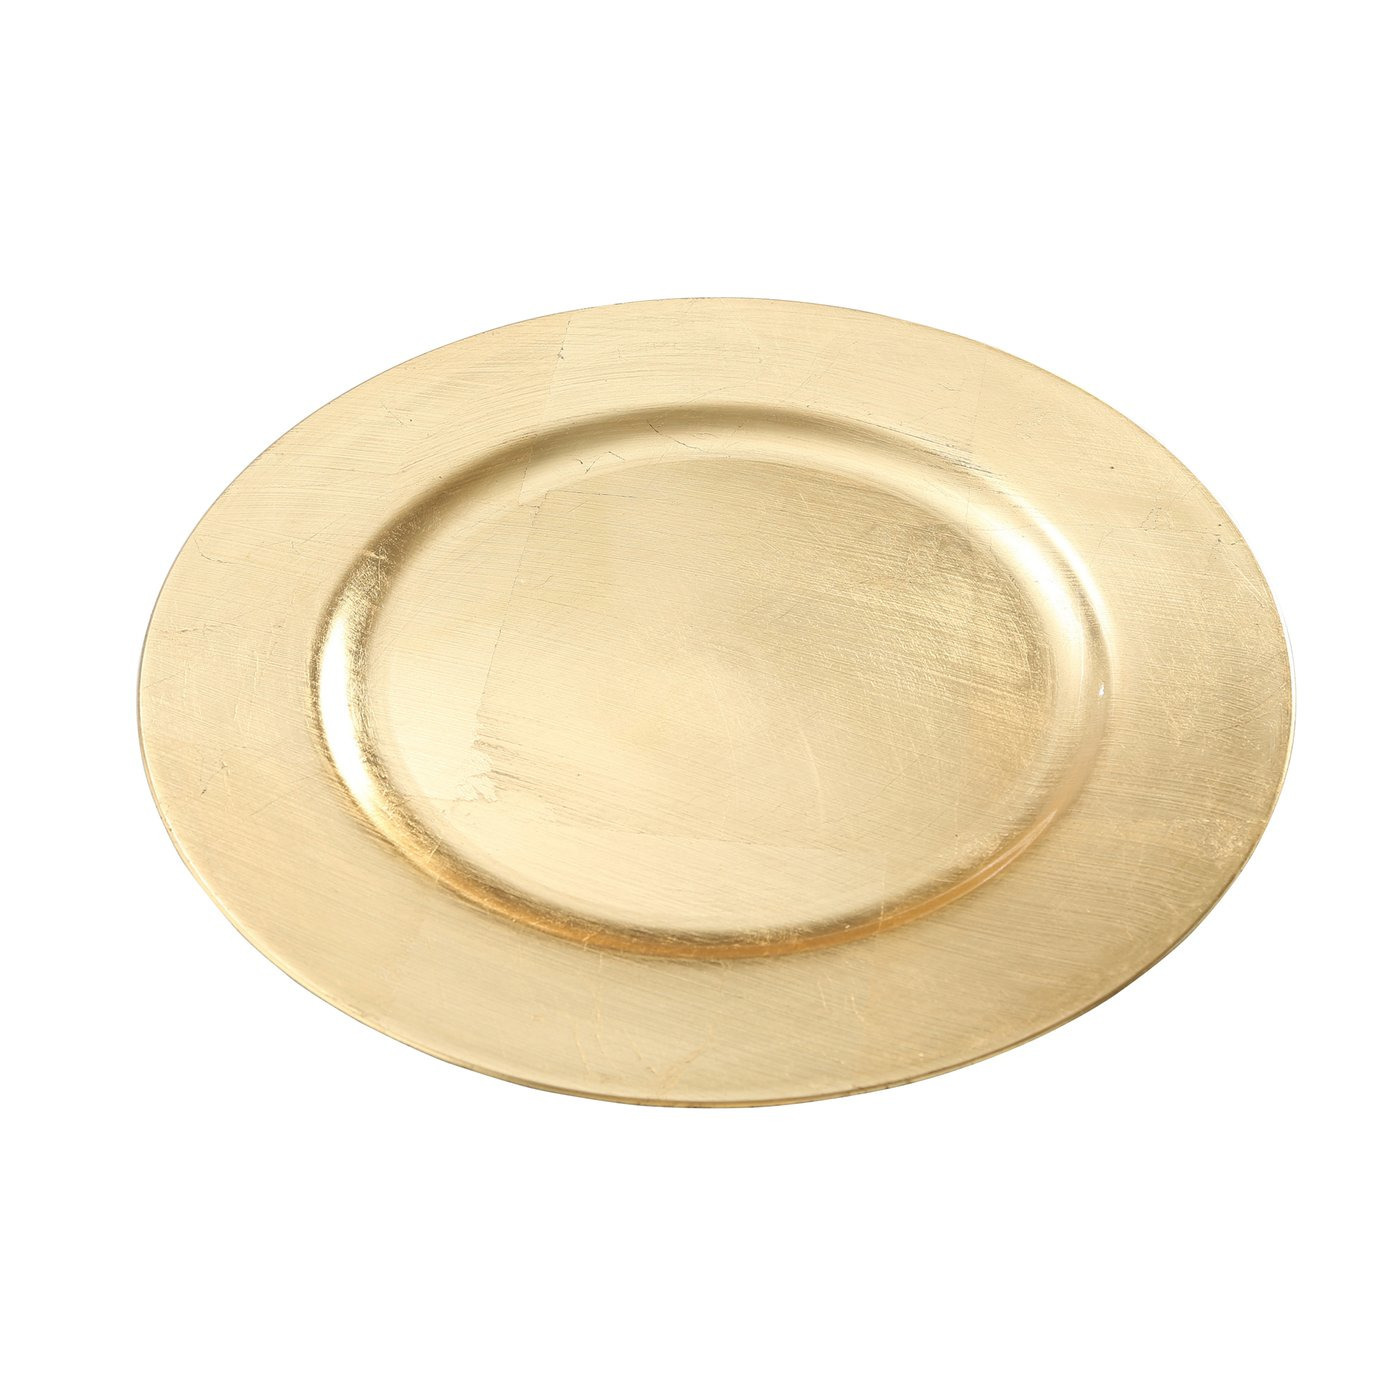 1x Ronde goudkleurige onderzet diner-eettafel borden 33 cm